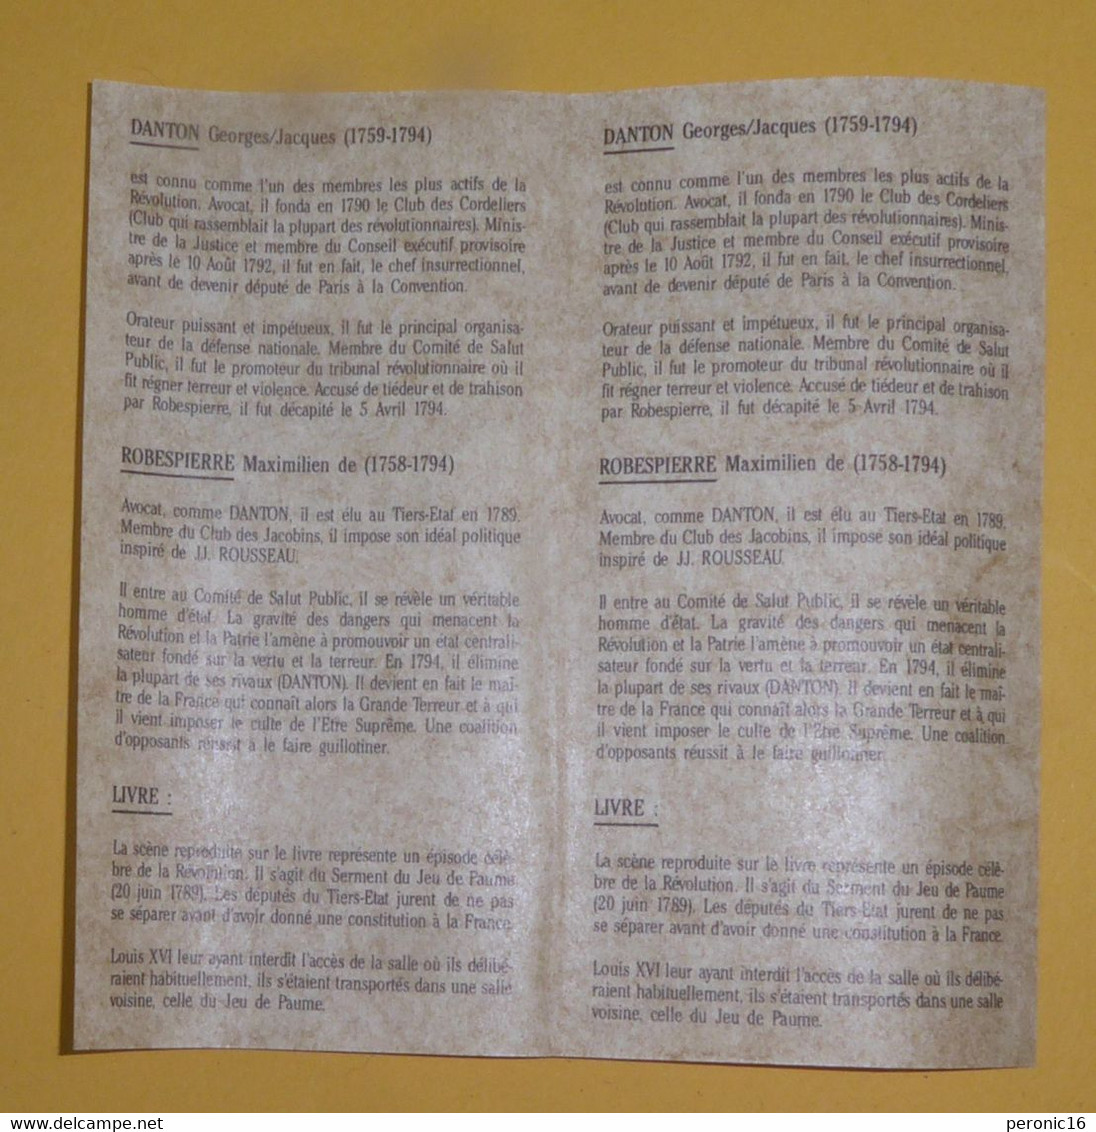 NAPOLEON Cognac CAMUS - Révolution Française - 1789-1989 livre en porcelaine de Limoges dans son coffret